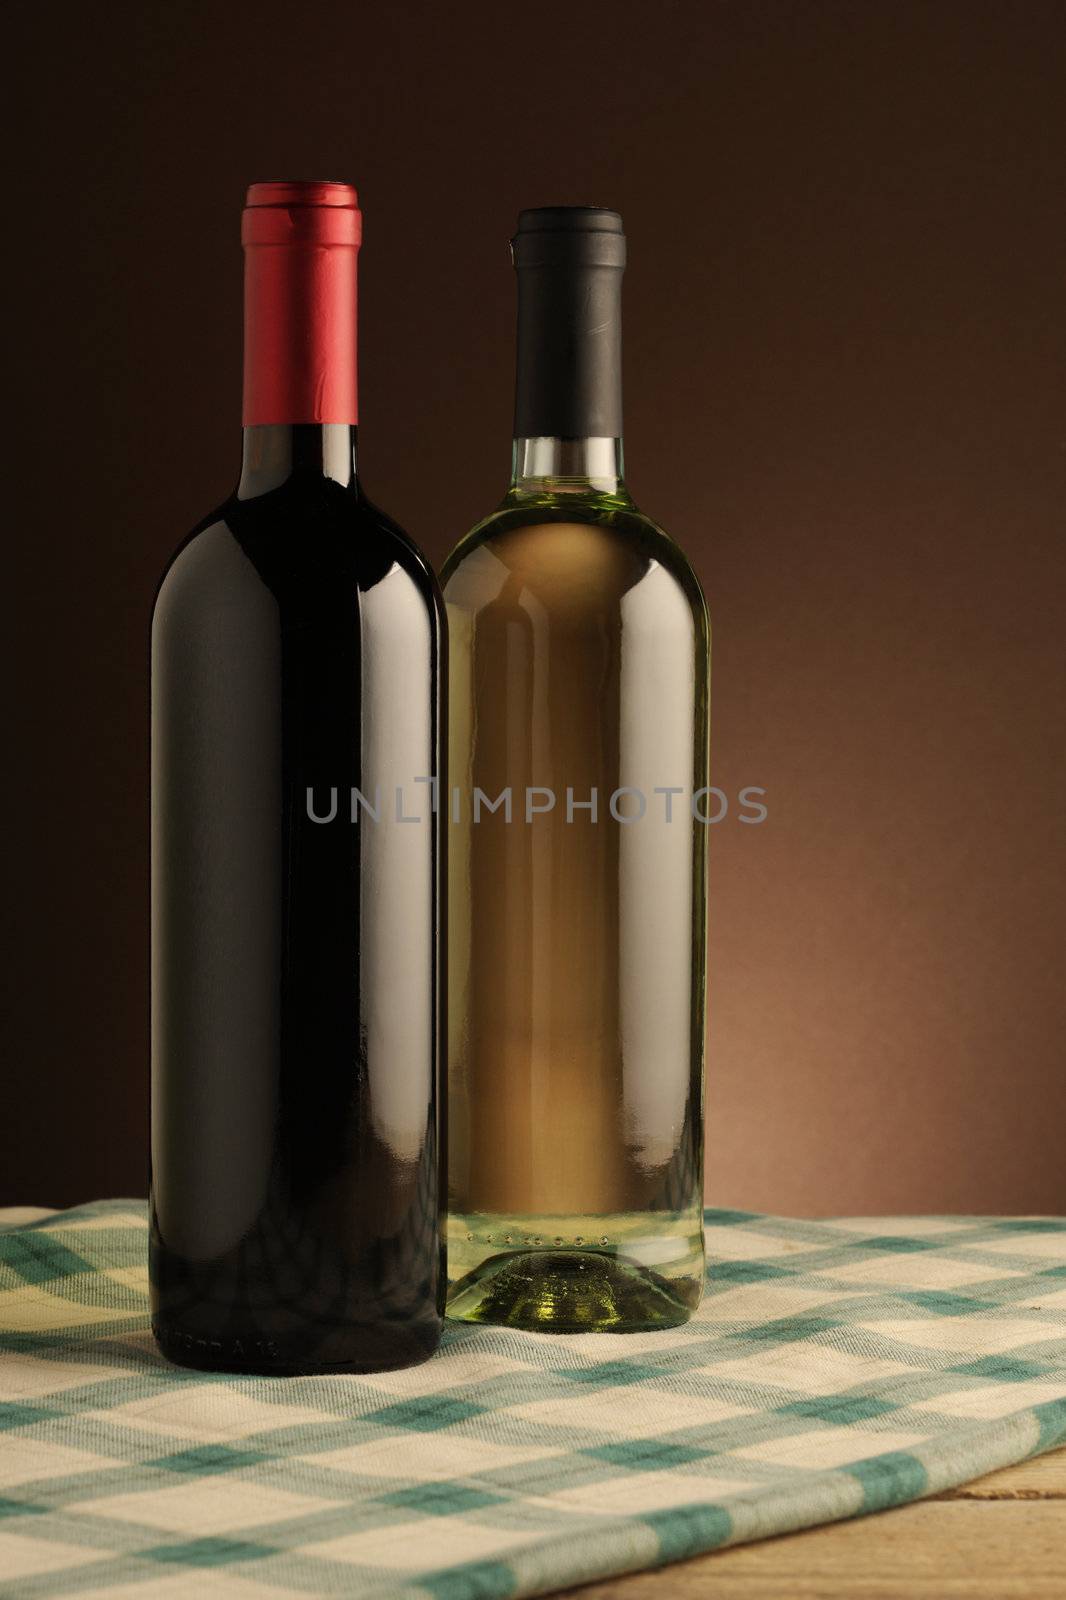  wine bottles by stokkete